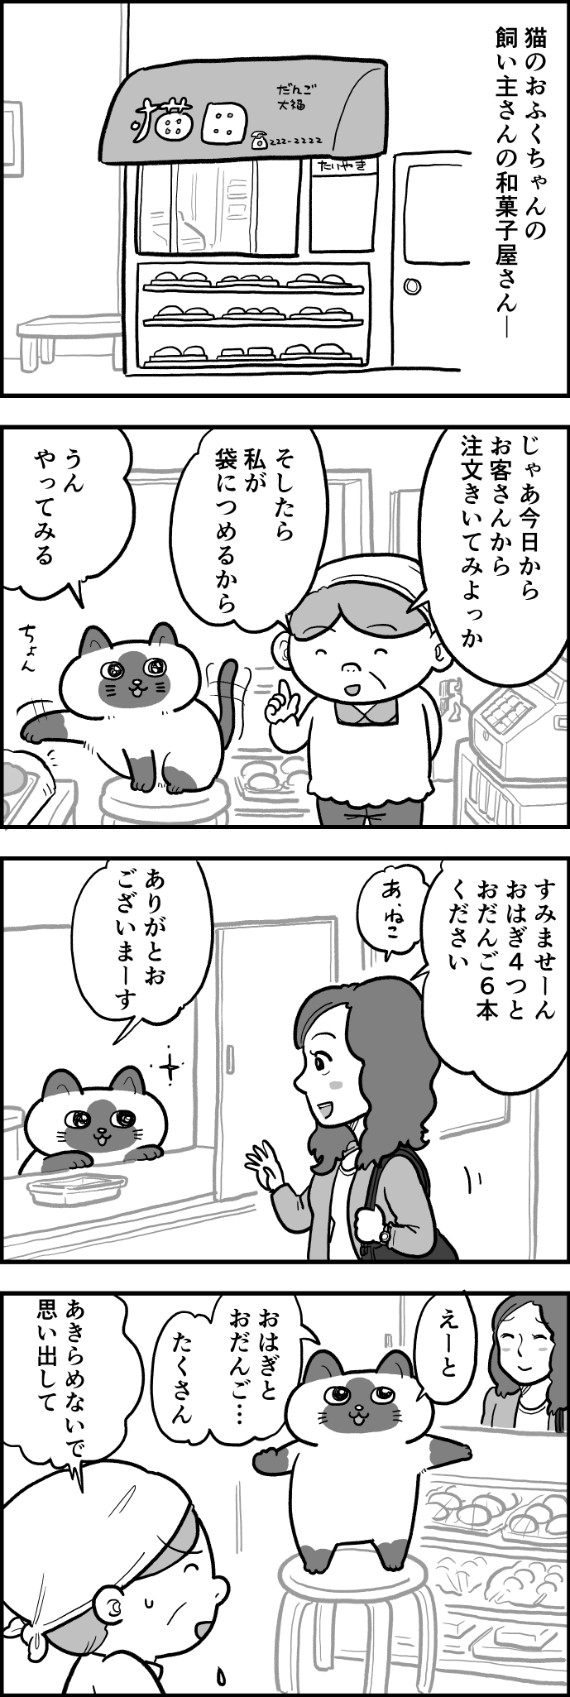 ofukuchan_manga_04.jpg